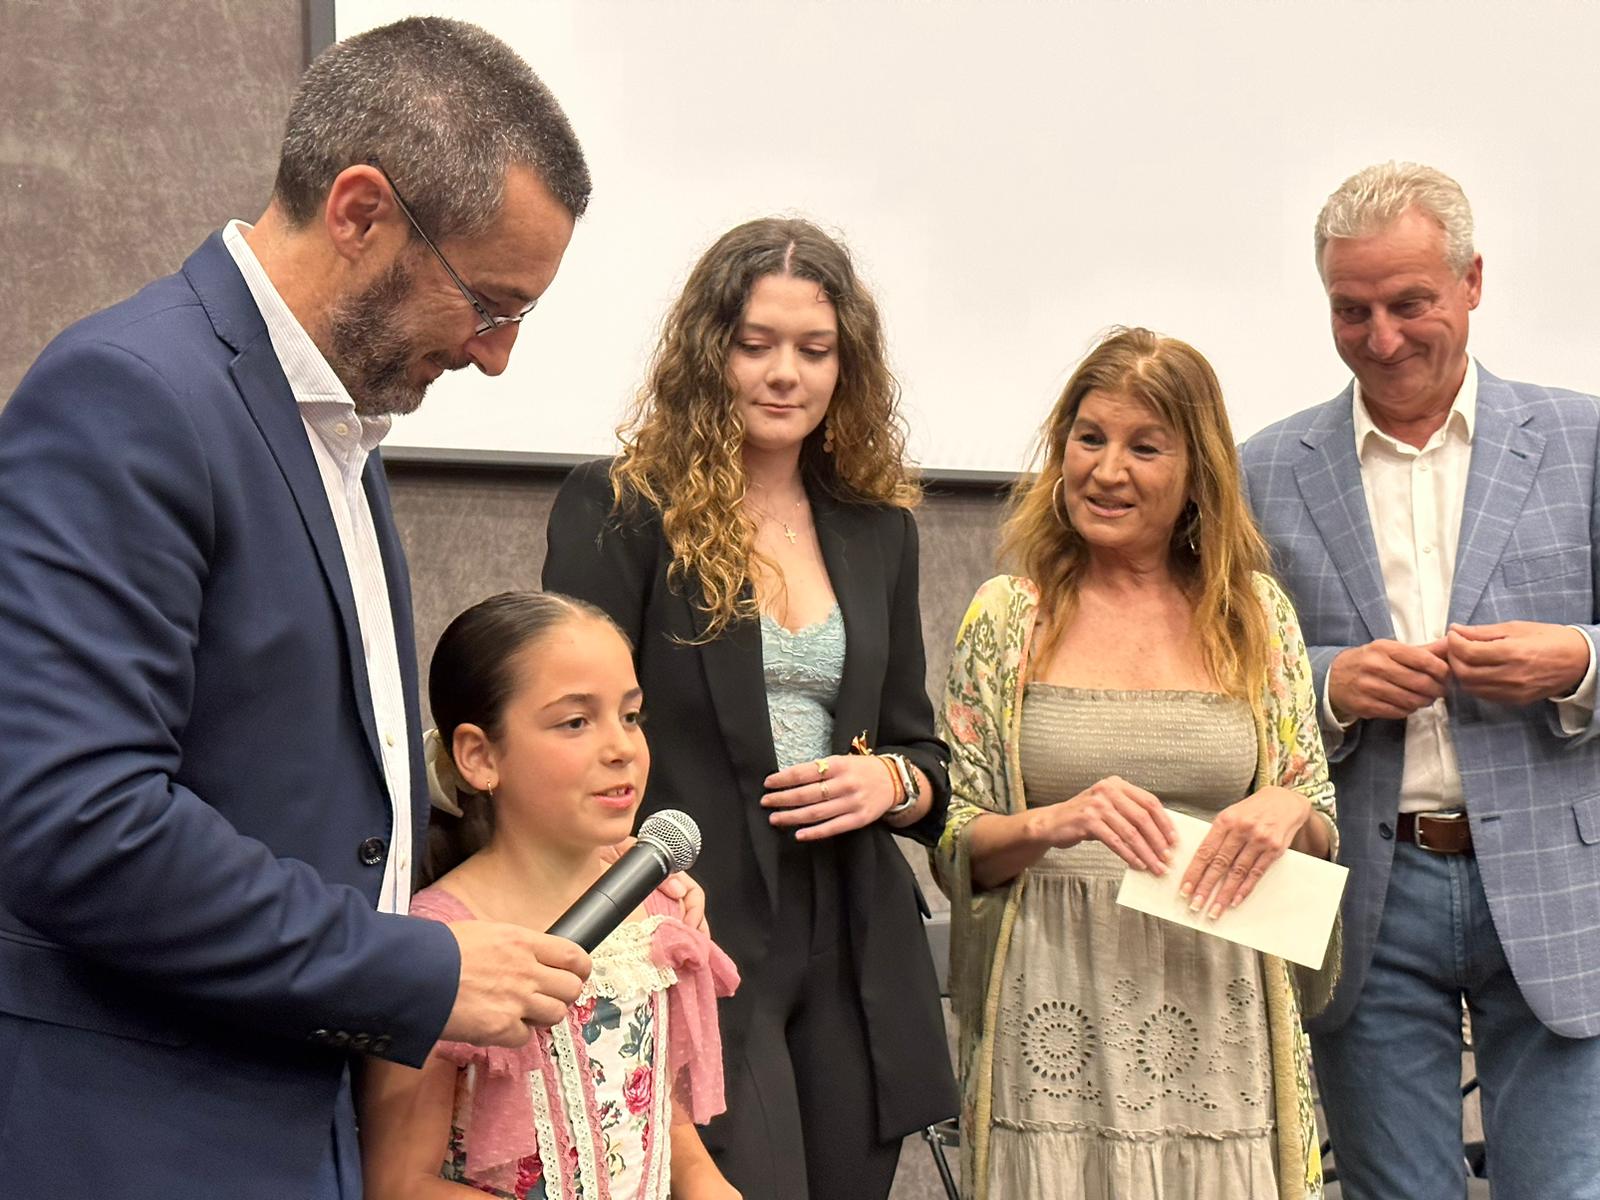 Lola Barreno e Inmaculada Navarro, candidatas a reinas infantil y juvenil por el Ayuntamiento de La Línea